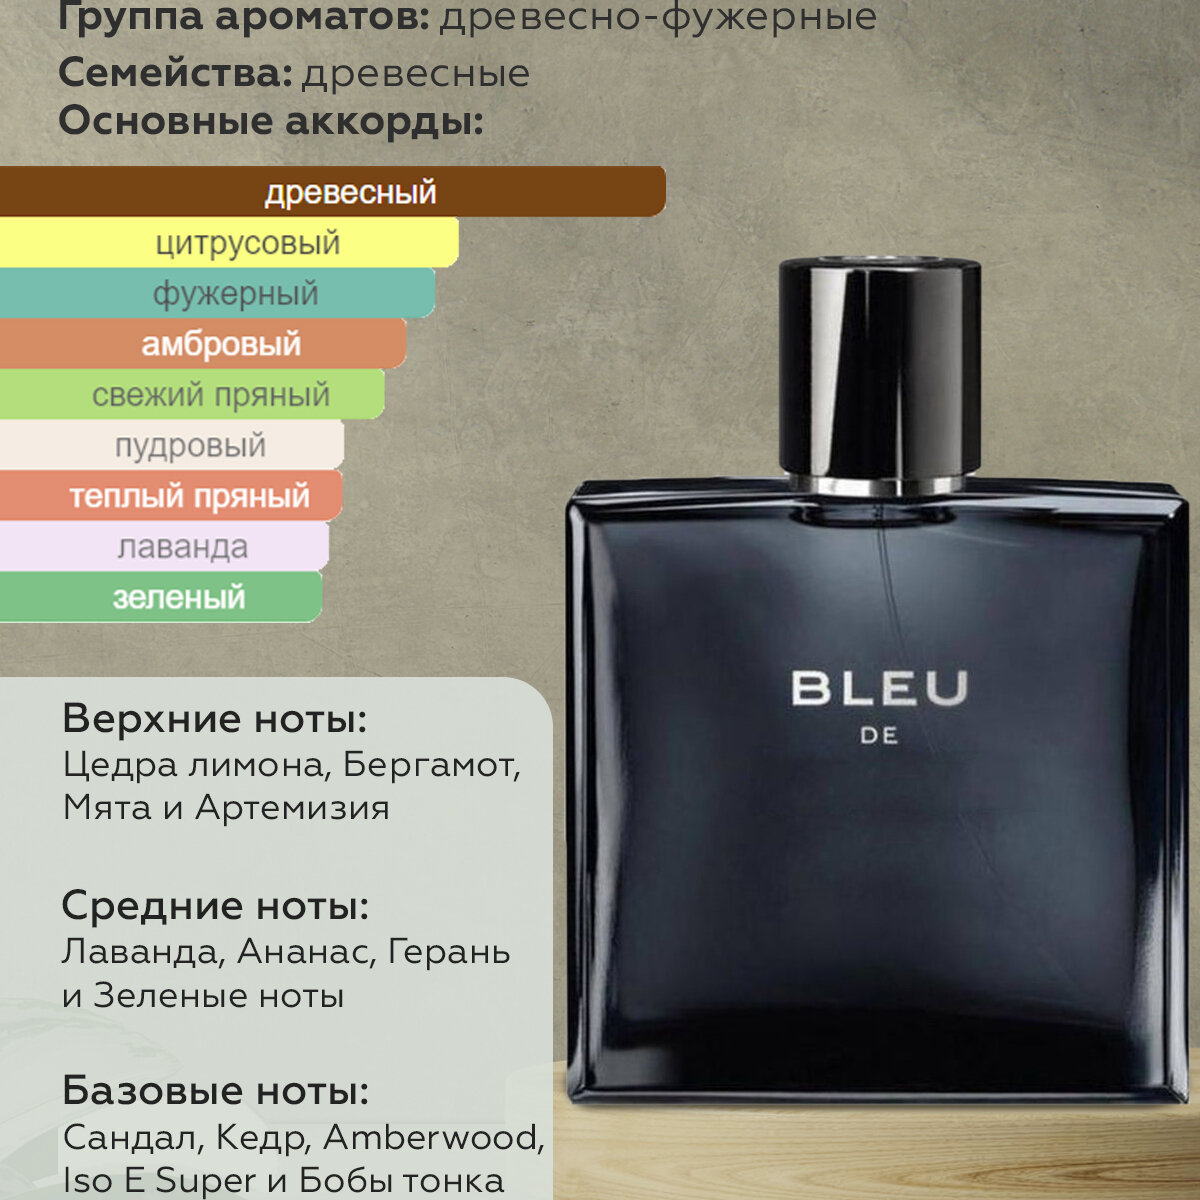 Gratus Parfum Bleu de Автопарфюм 7 мл / Ароматизатор для автомобиля и дома